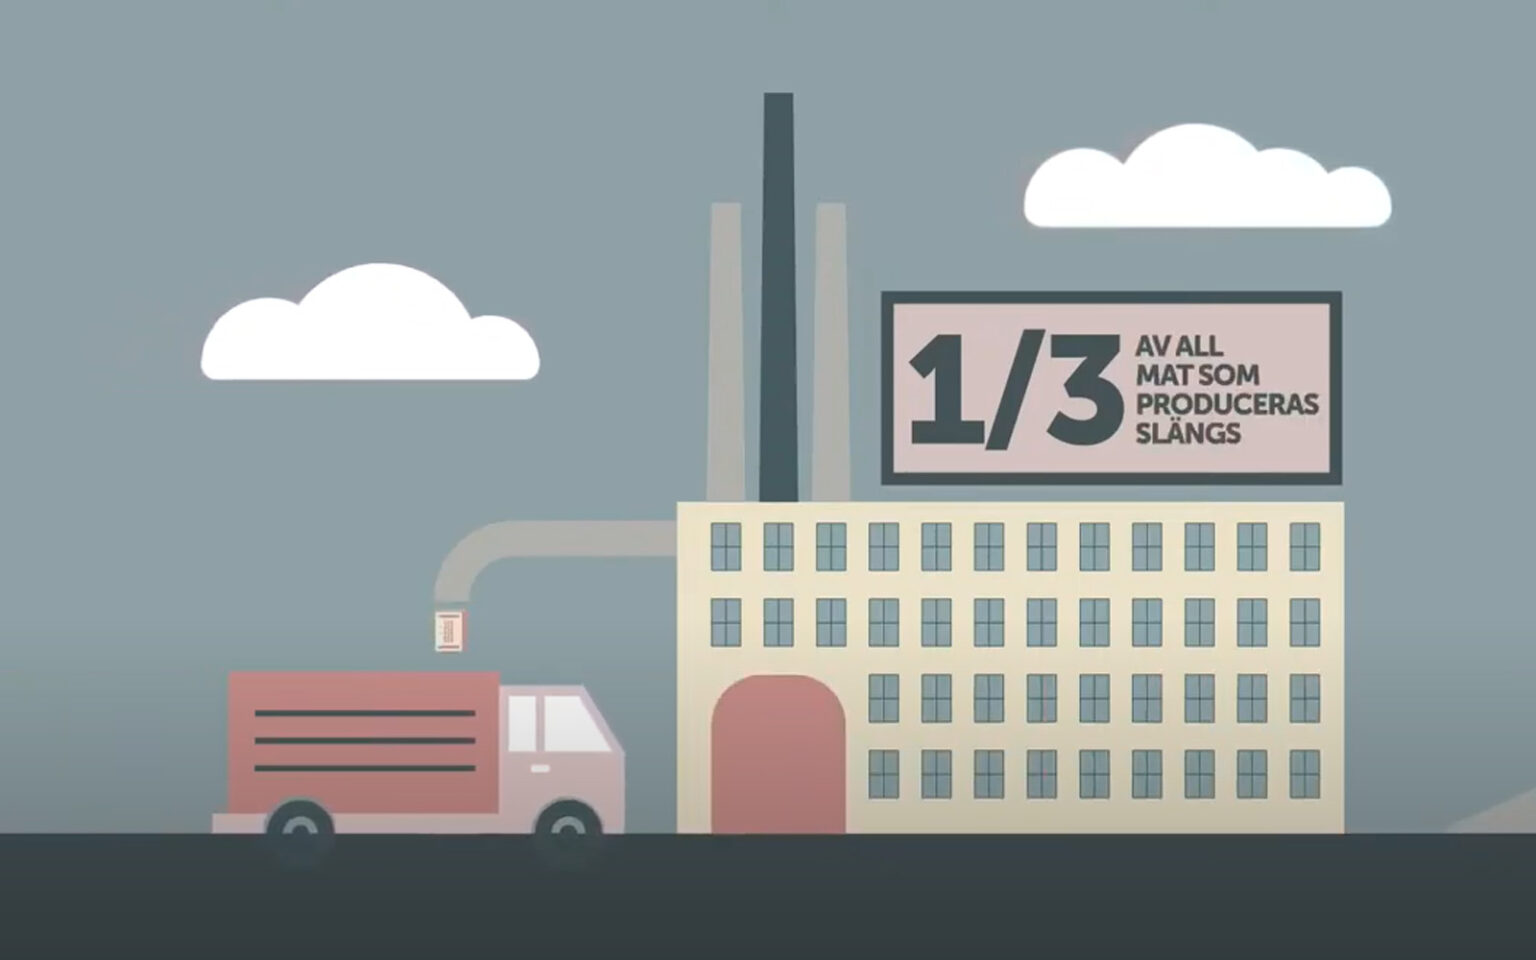 Illustration av fabrik och lastbil, med en skylt som säger att en tredjedel av all mat som produceras slängs.